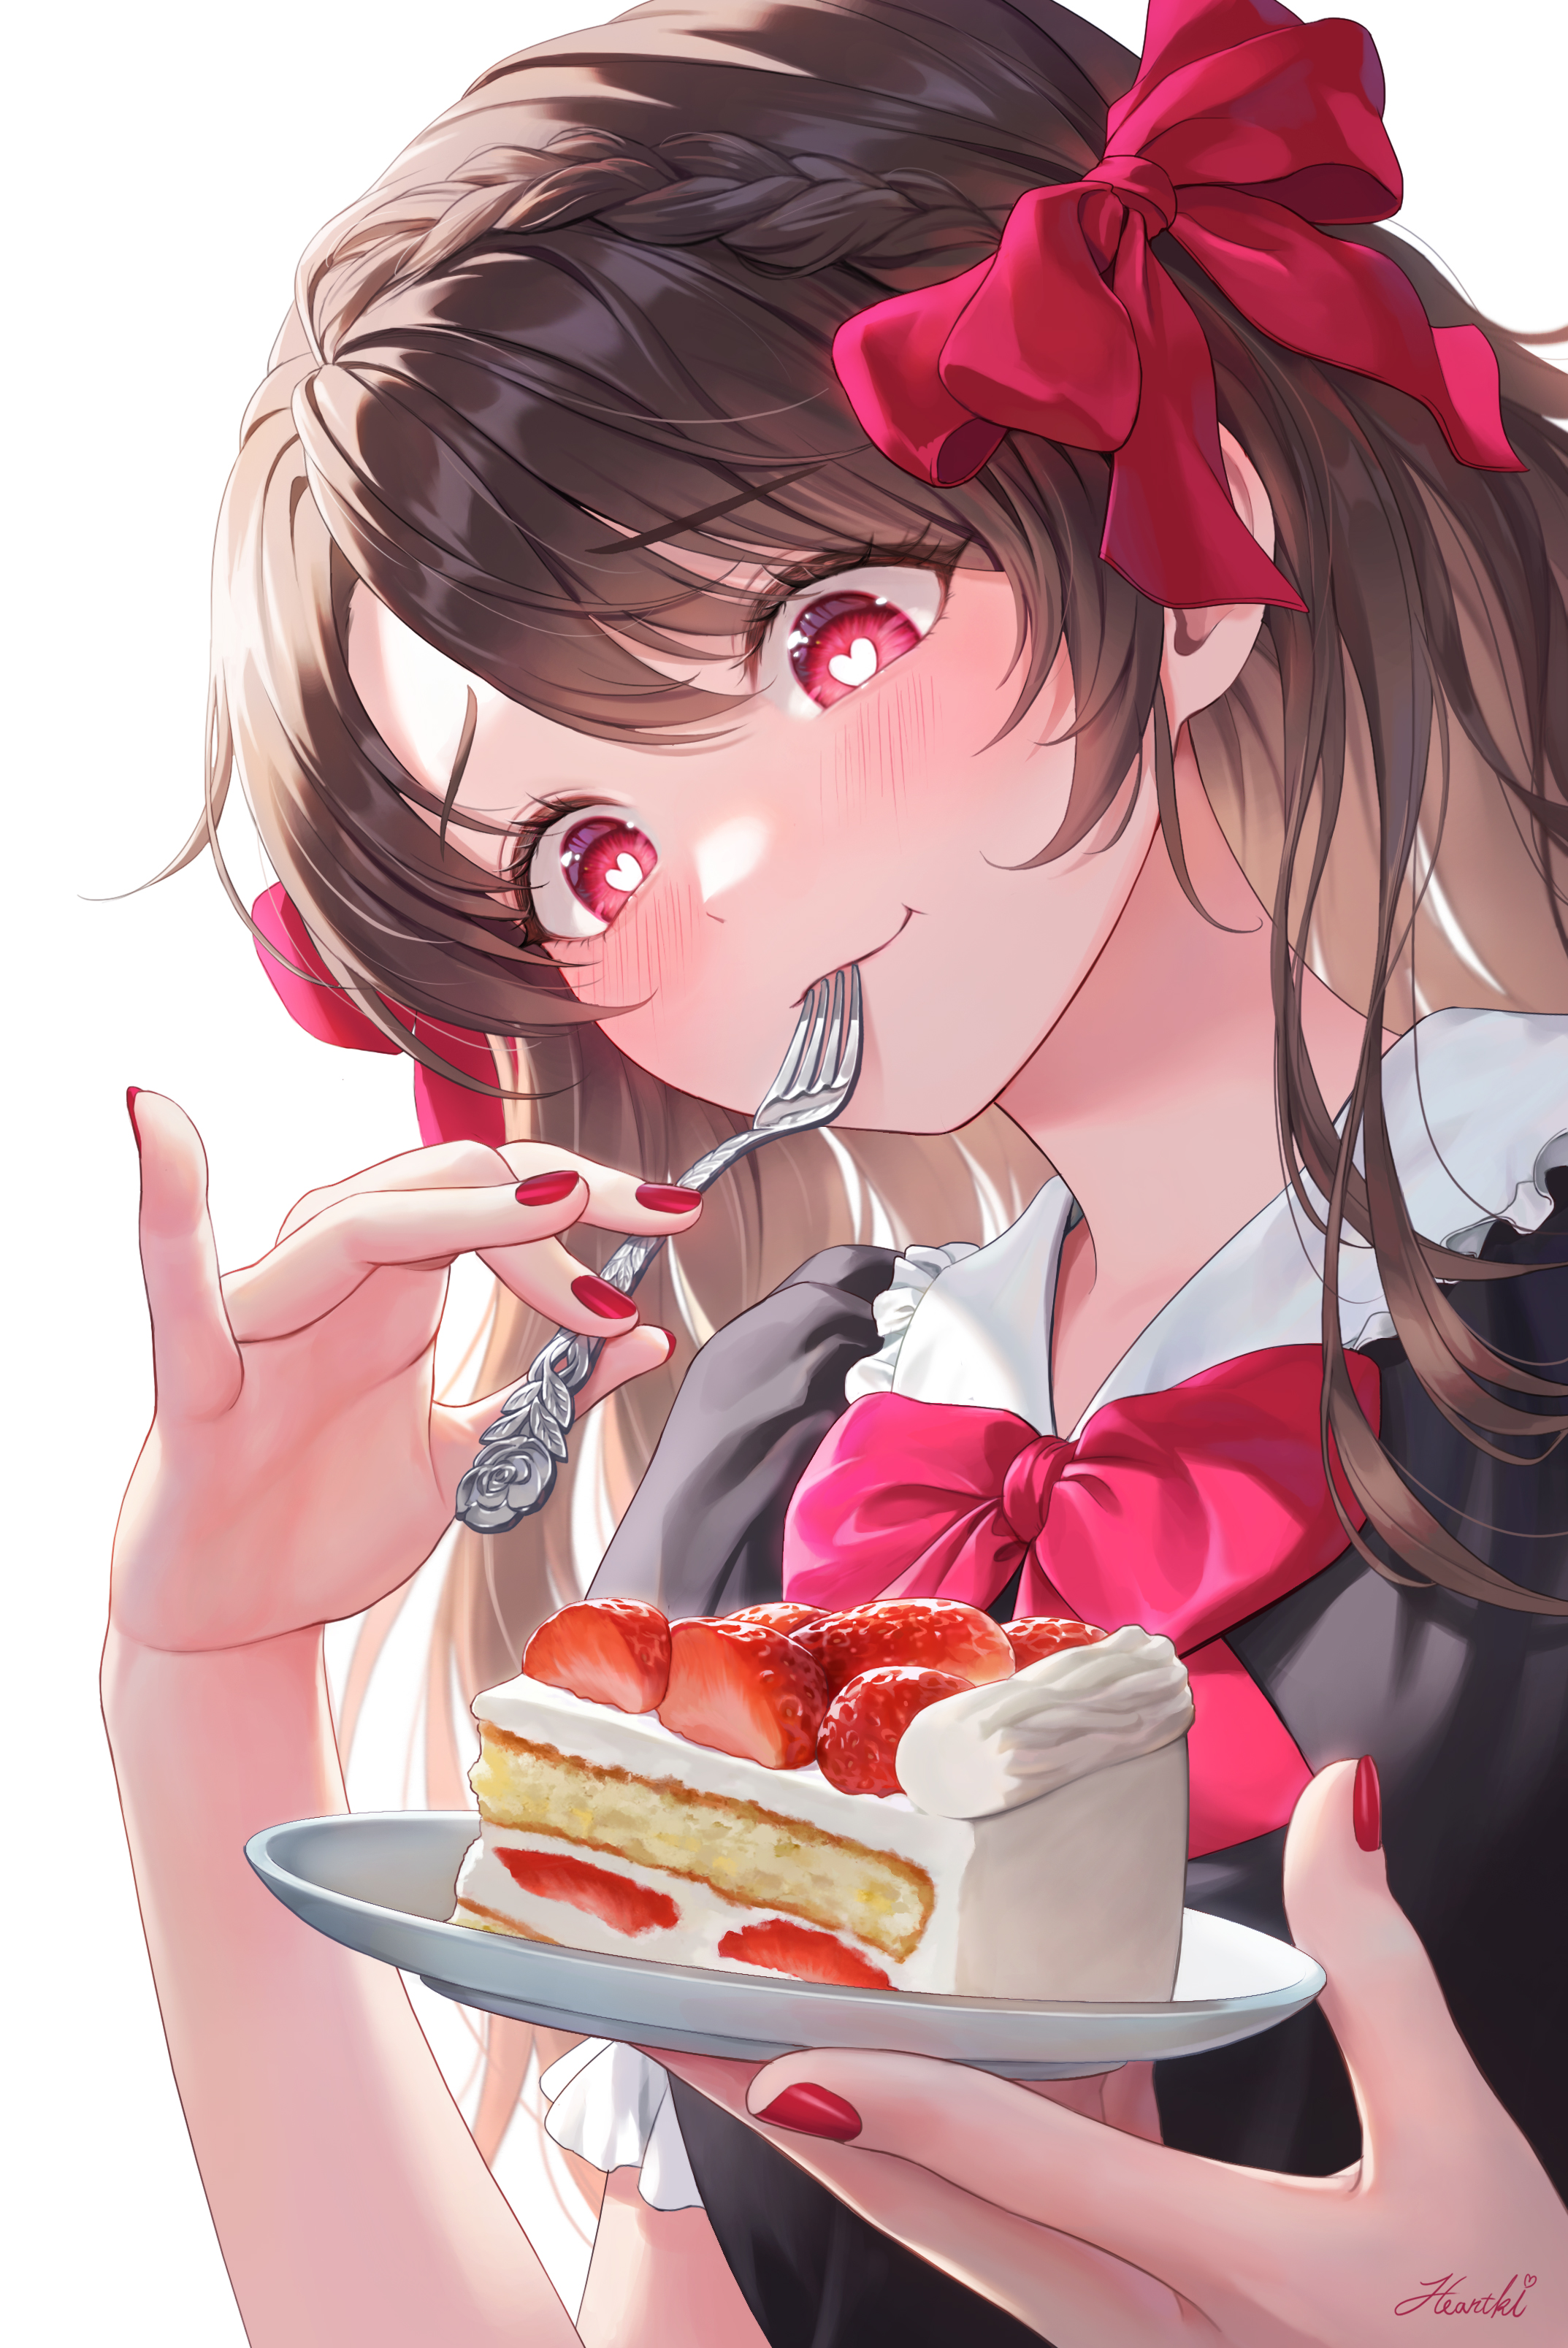 Anime Ribbon Fork Cake Nail Polish Heart Eyes Eating Brunette Anime Girls Strawberries Heartki Blush 2147x3215